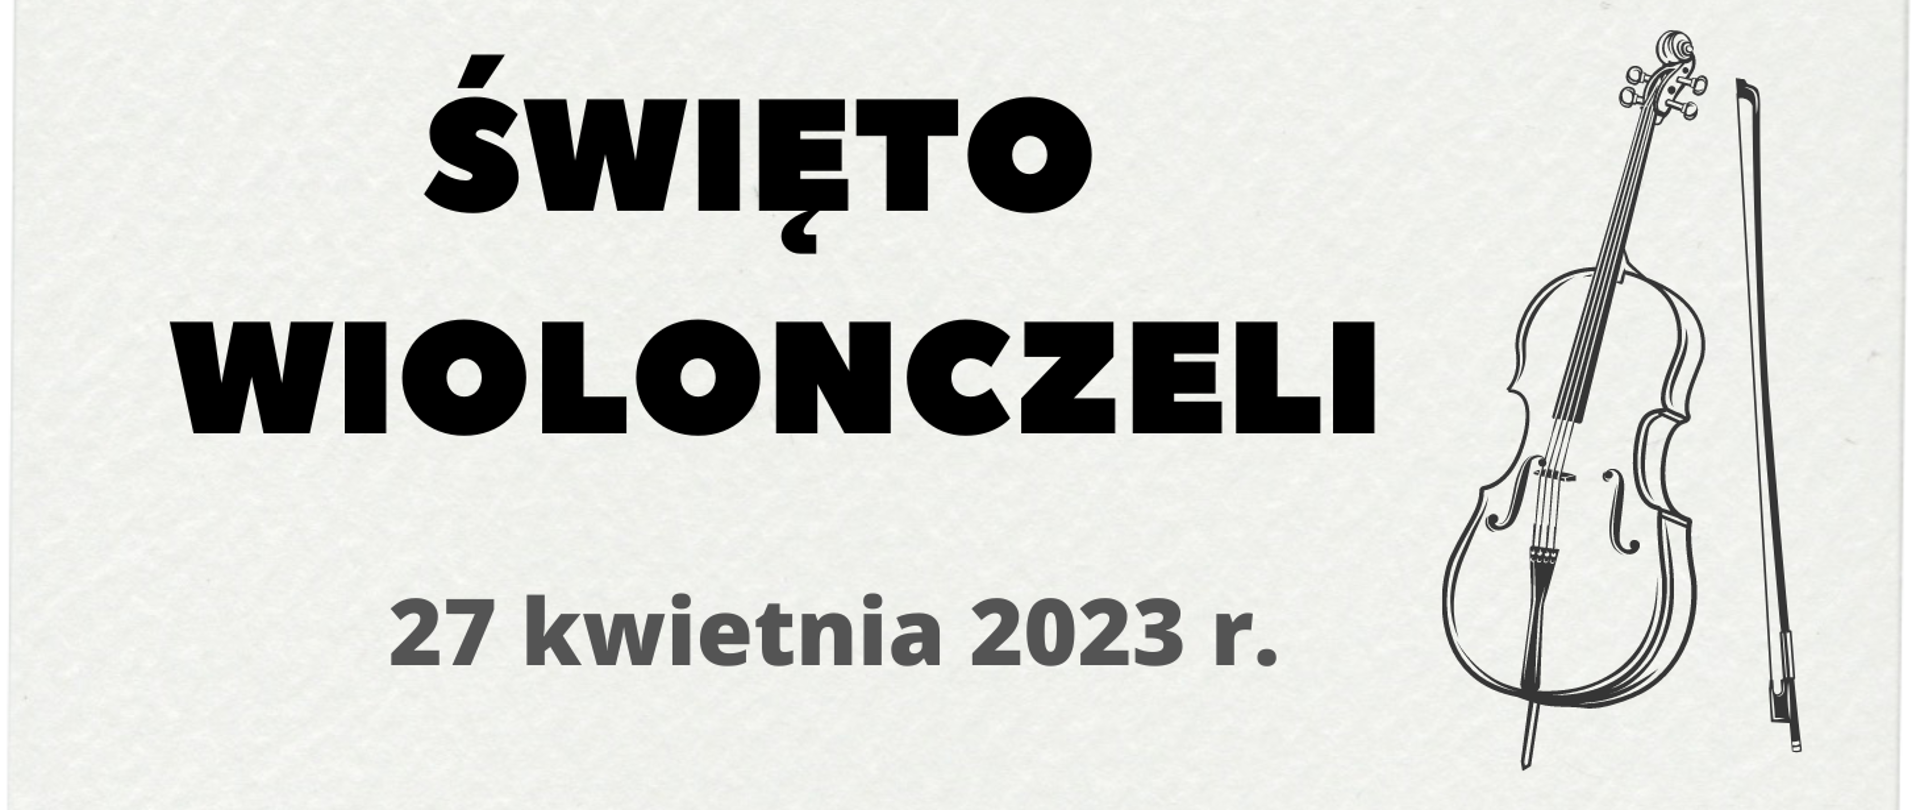 Plakat. Na białym tle z prawej strony grafika przedstawiająca wiolonczelę. Tekst banera: ŚWIĘTO WIOLONCZELI 27 kwietnia 2023 r.